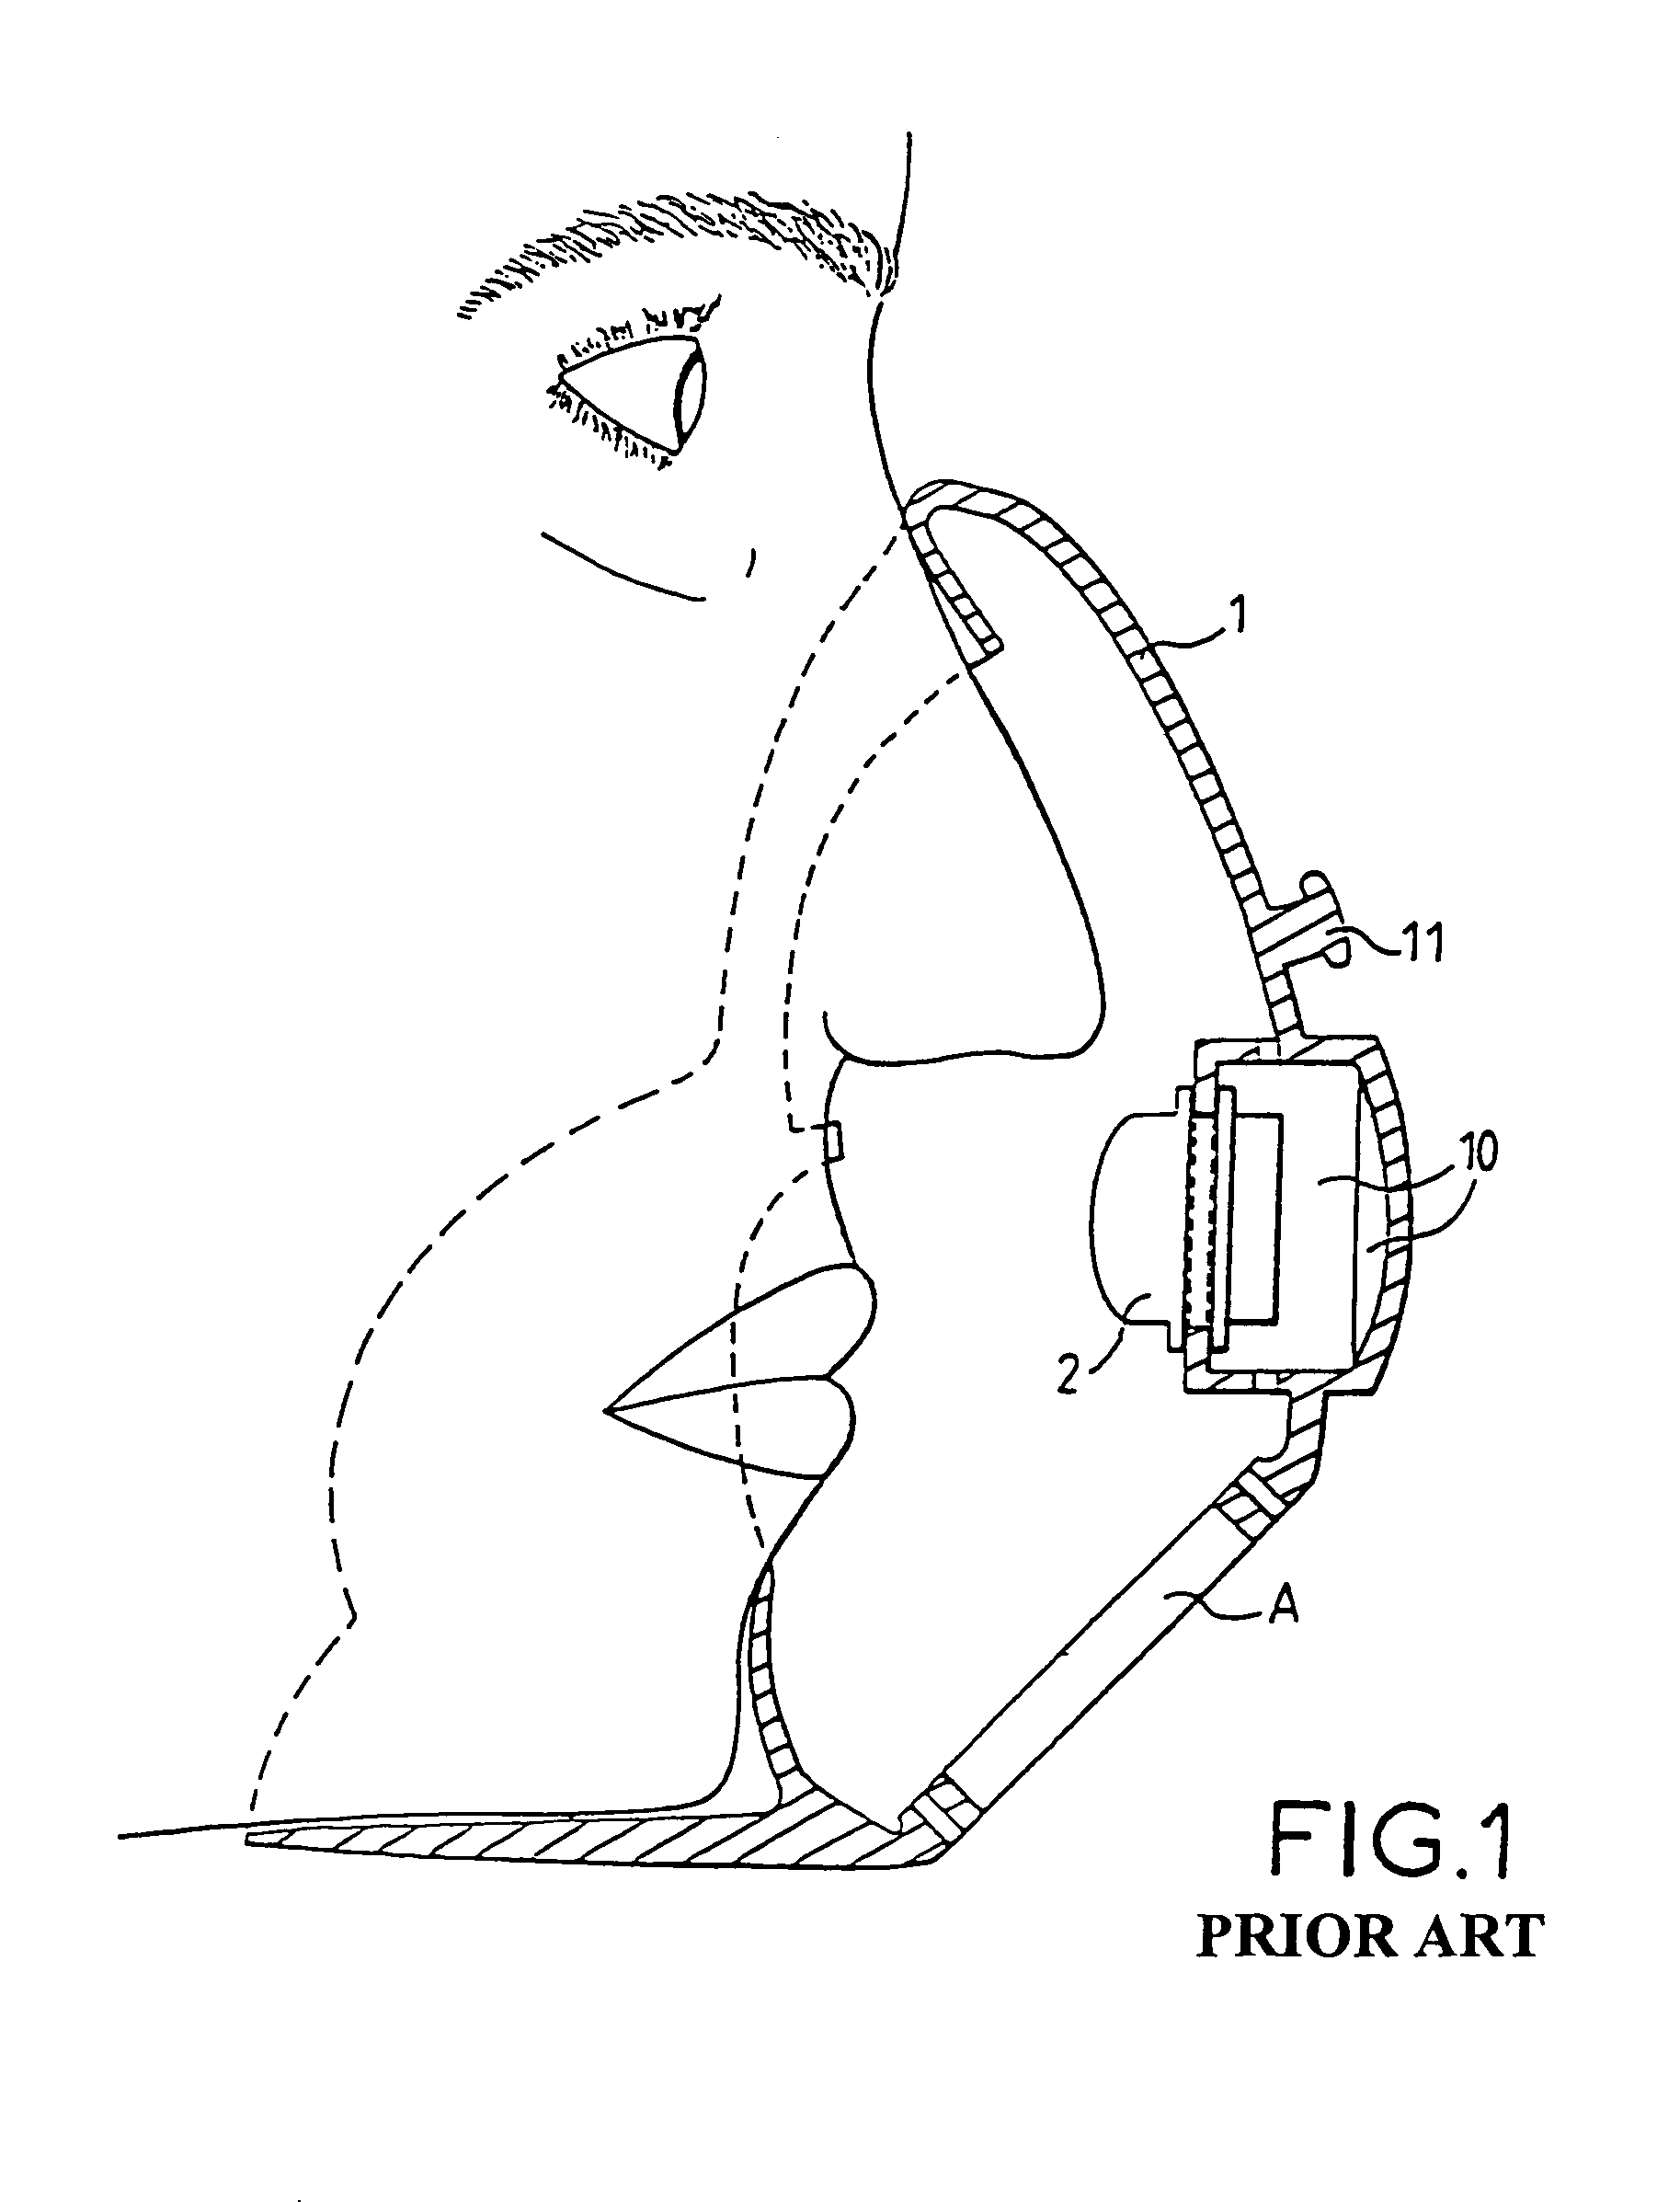 Oxygen inhaler mask with sound pickup device